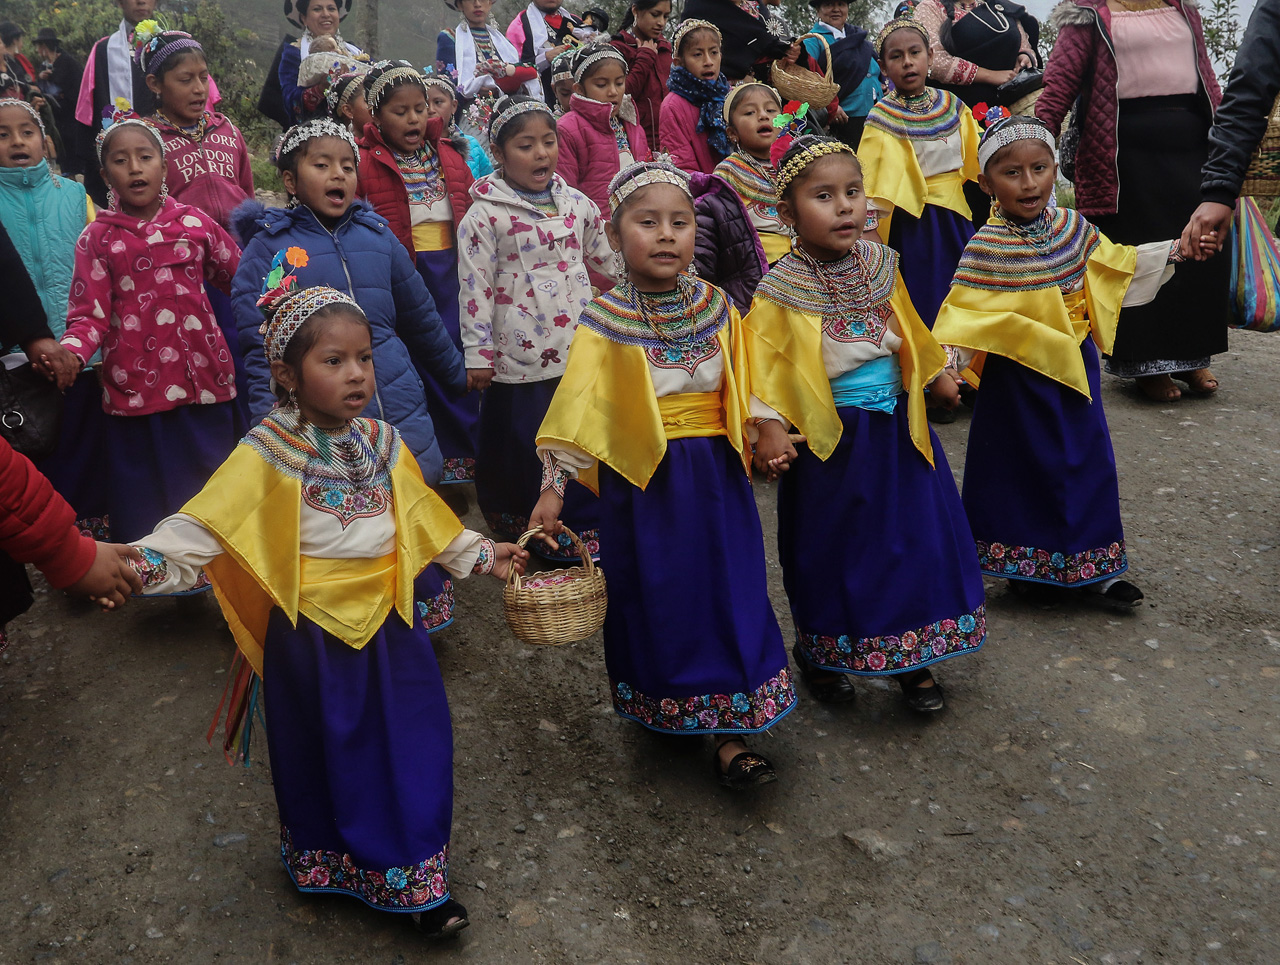 la simbiosis de la cultura andina y europea judeo cristiana de su pueblo, en la celebración del Kapac Raymi.